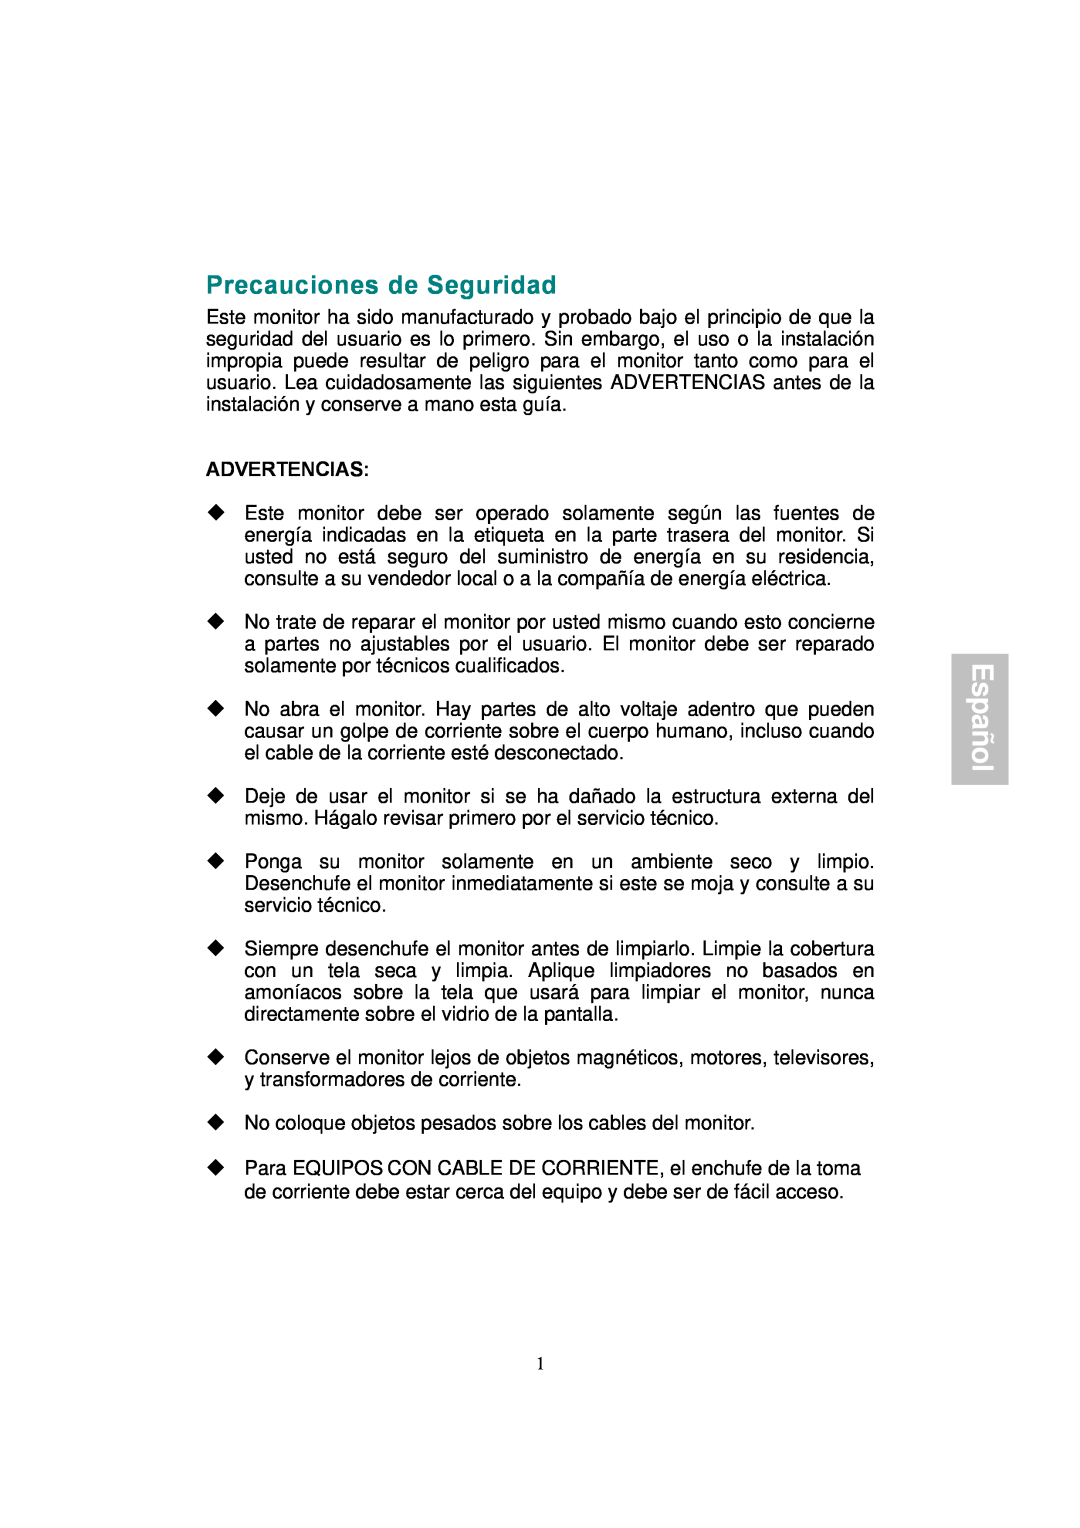 AOC 177S manual Precauciones de Seguridad, Español, Advertencias 